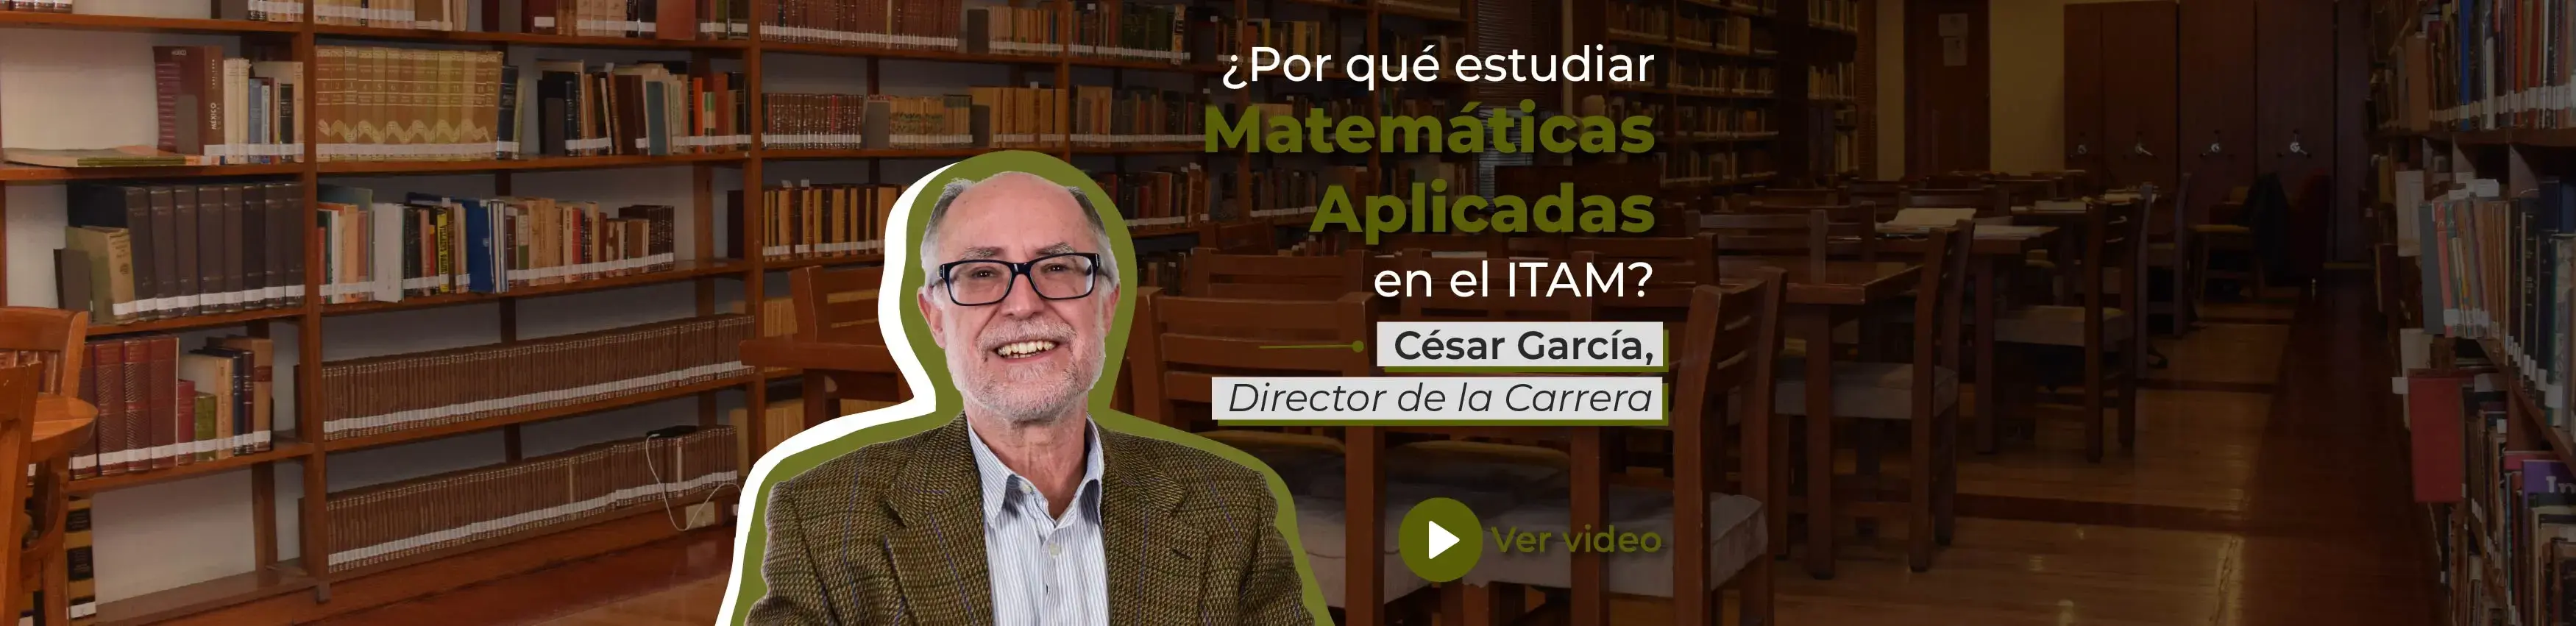 ¿Por qué estudiar Matemáticas Aplicadas en el ITAM?